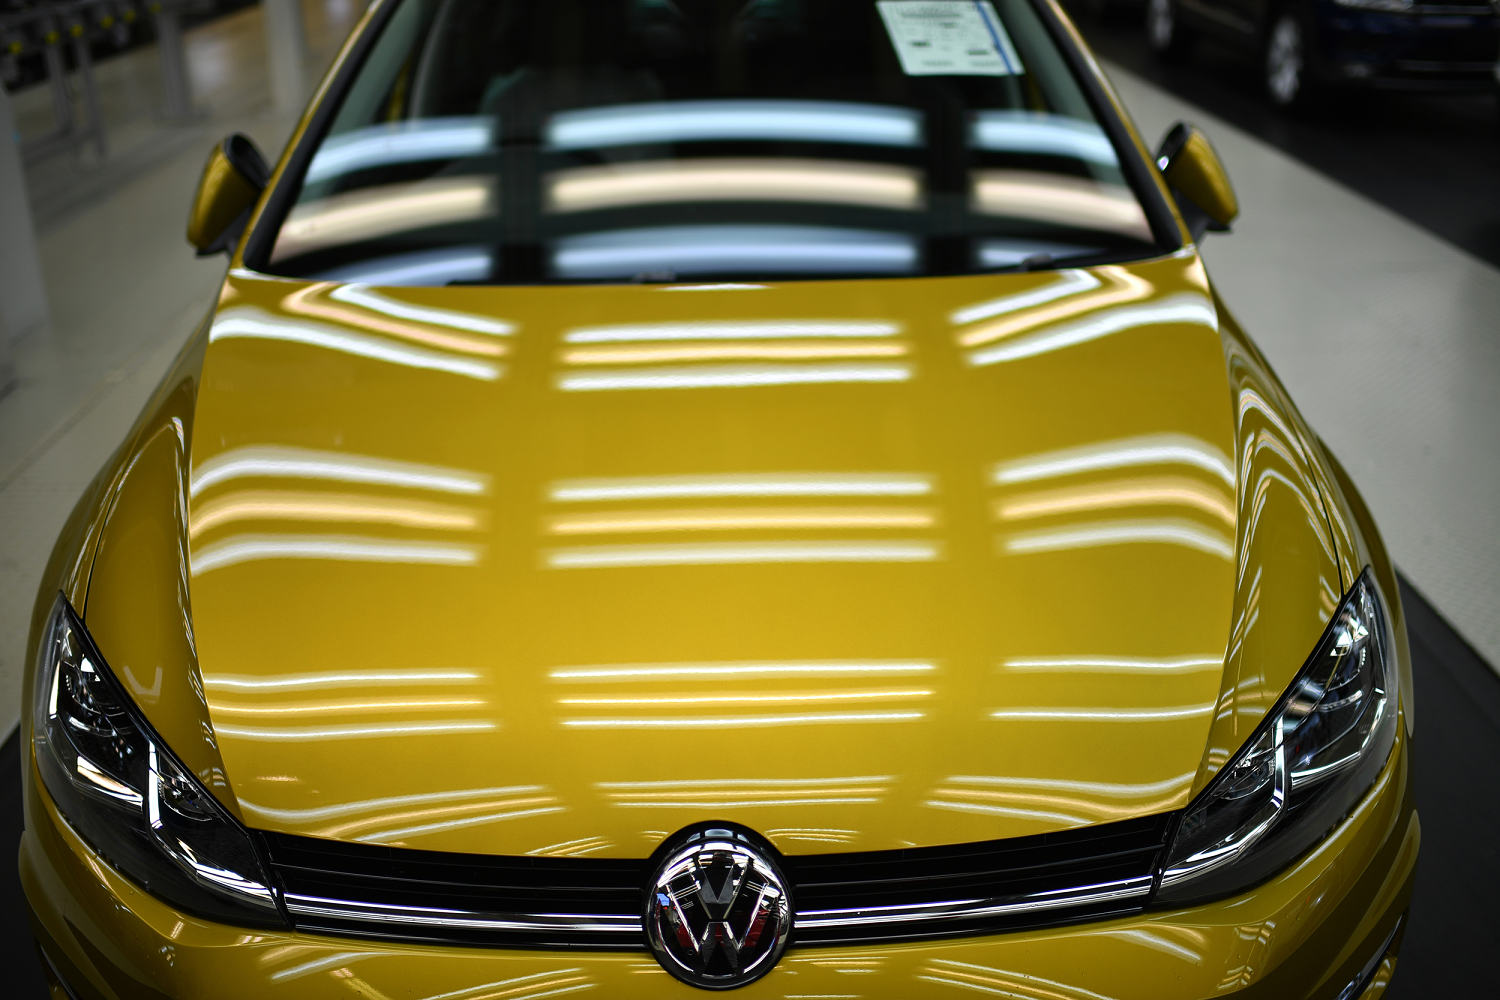 Volkswagen recalls 261,000 vehicles over fuel tank issue